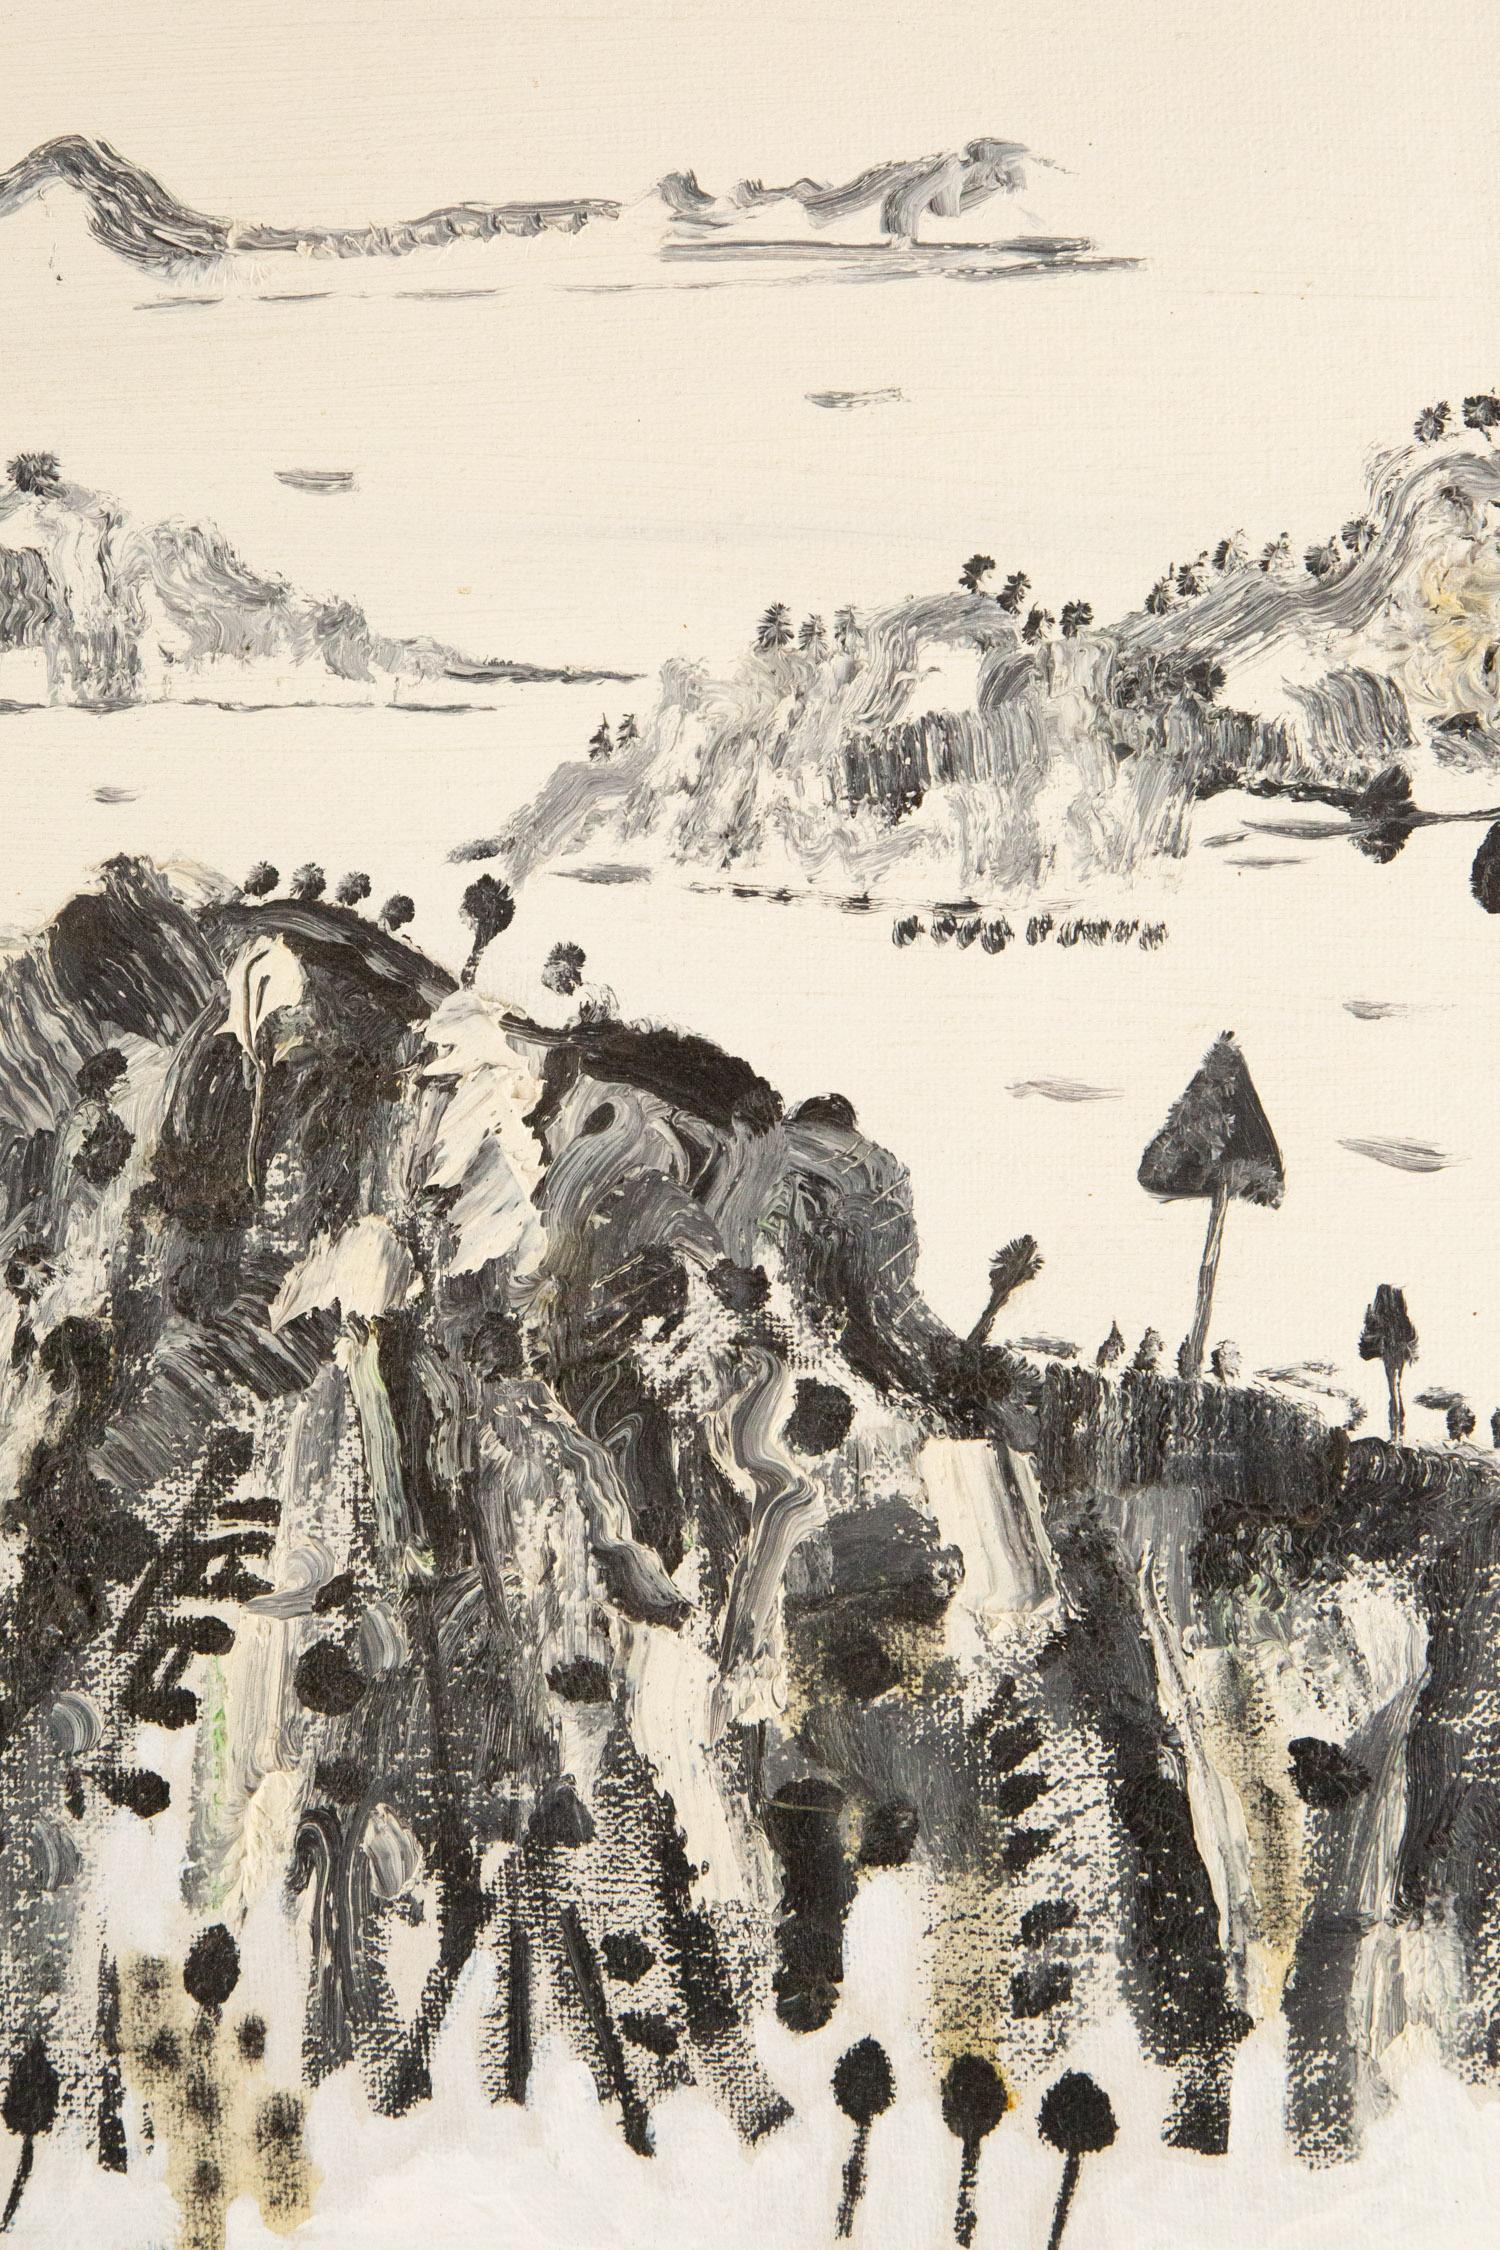 PengFei Yan Landscape Original Oil On Canvas 